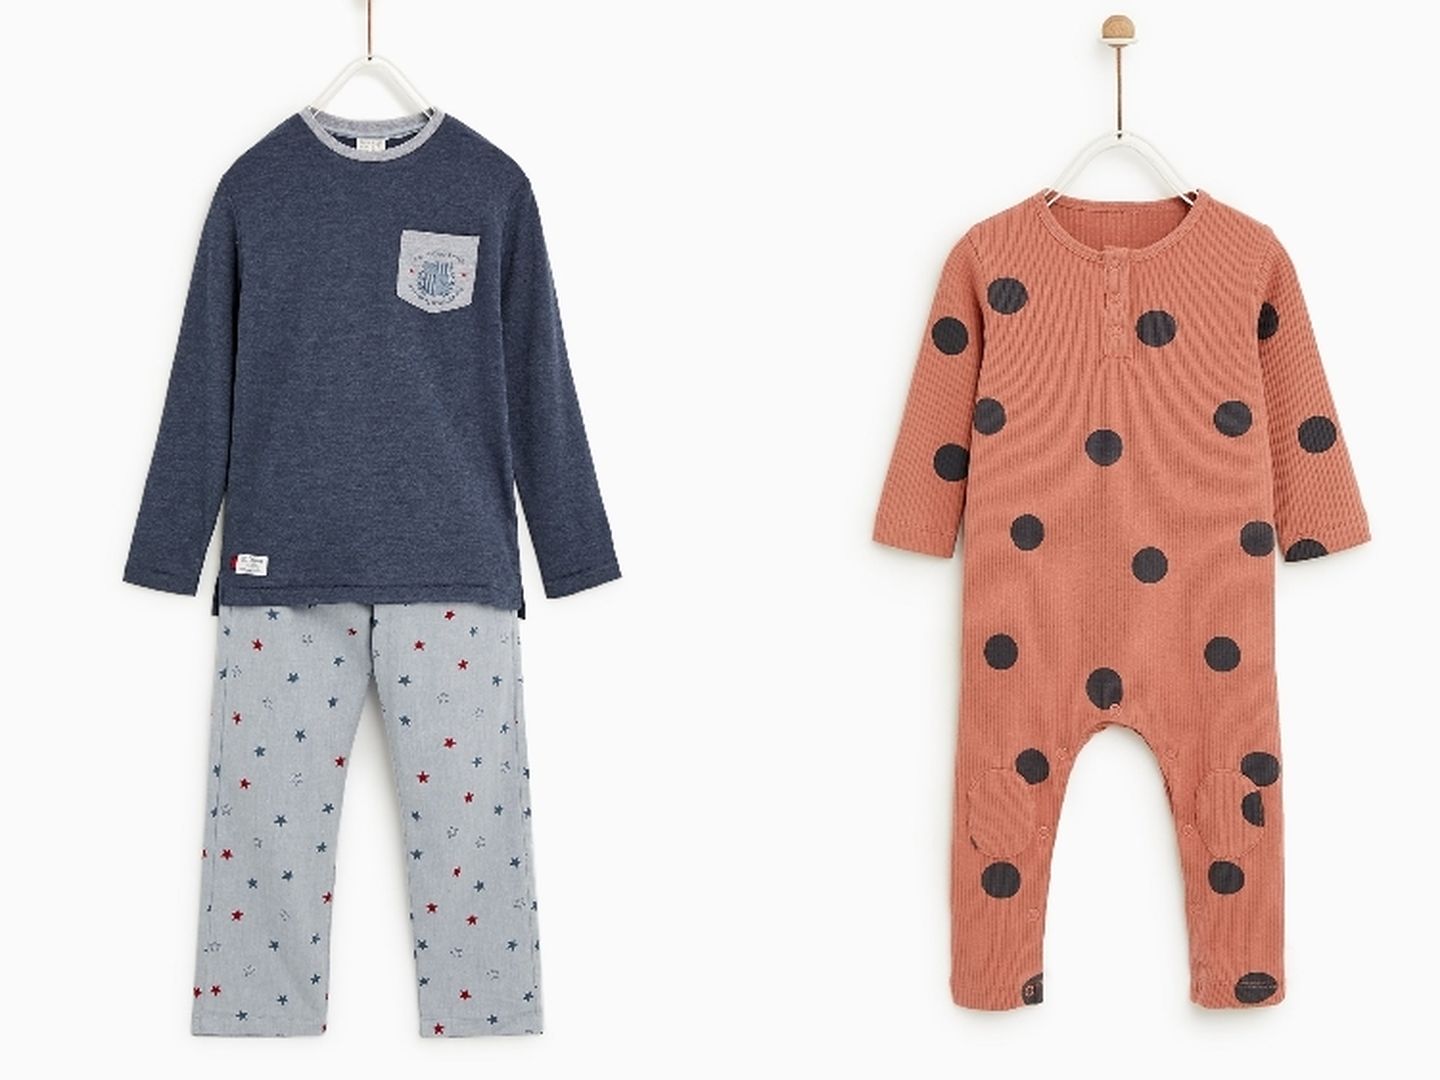 Pijamas de los hijos de Sara Carbonero. (Cortesía de Zara)